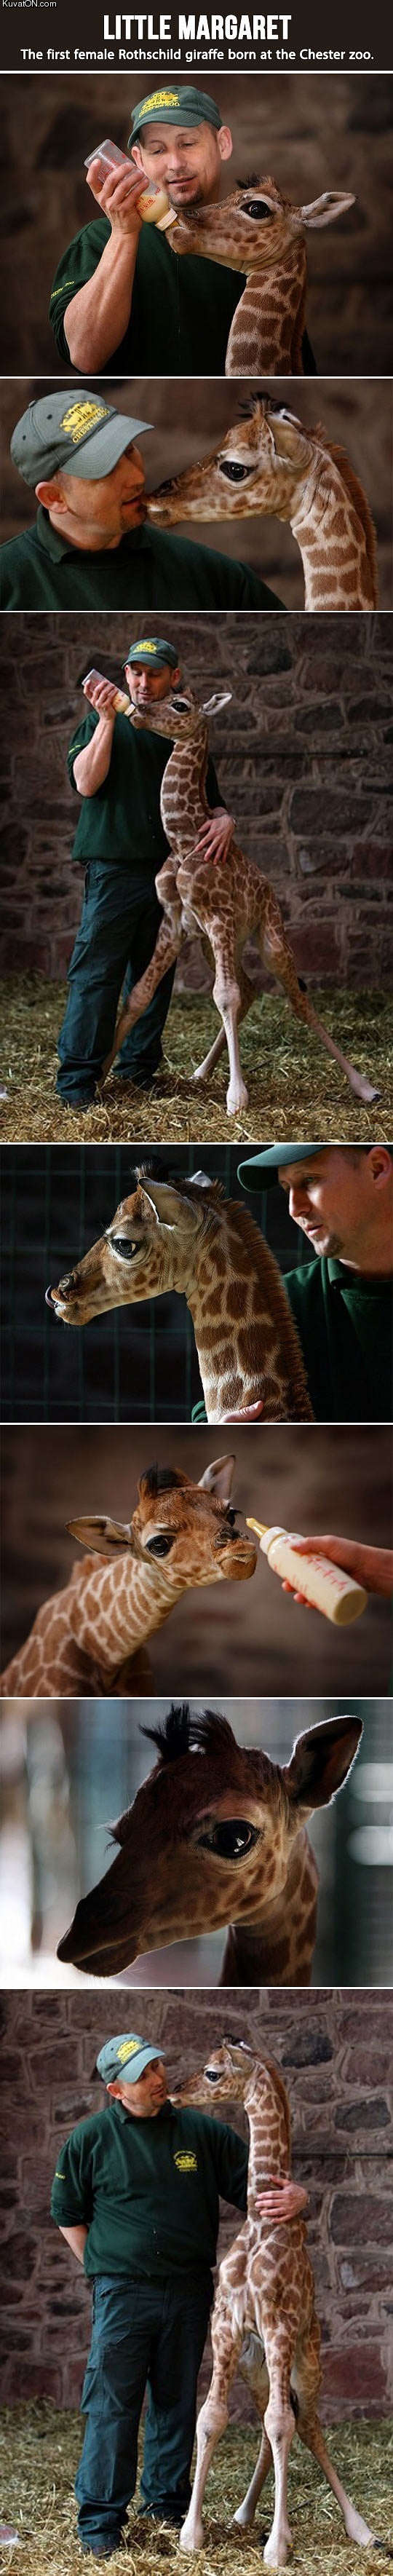 margaret_the_baby_giraffe.jpg